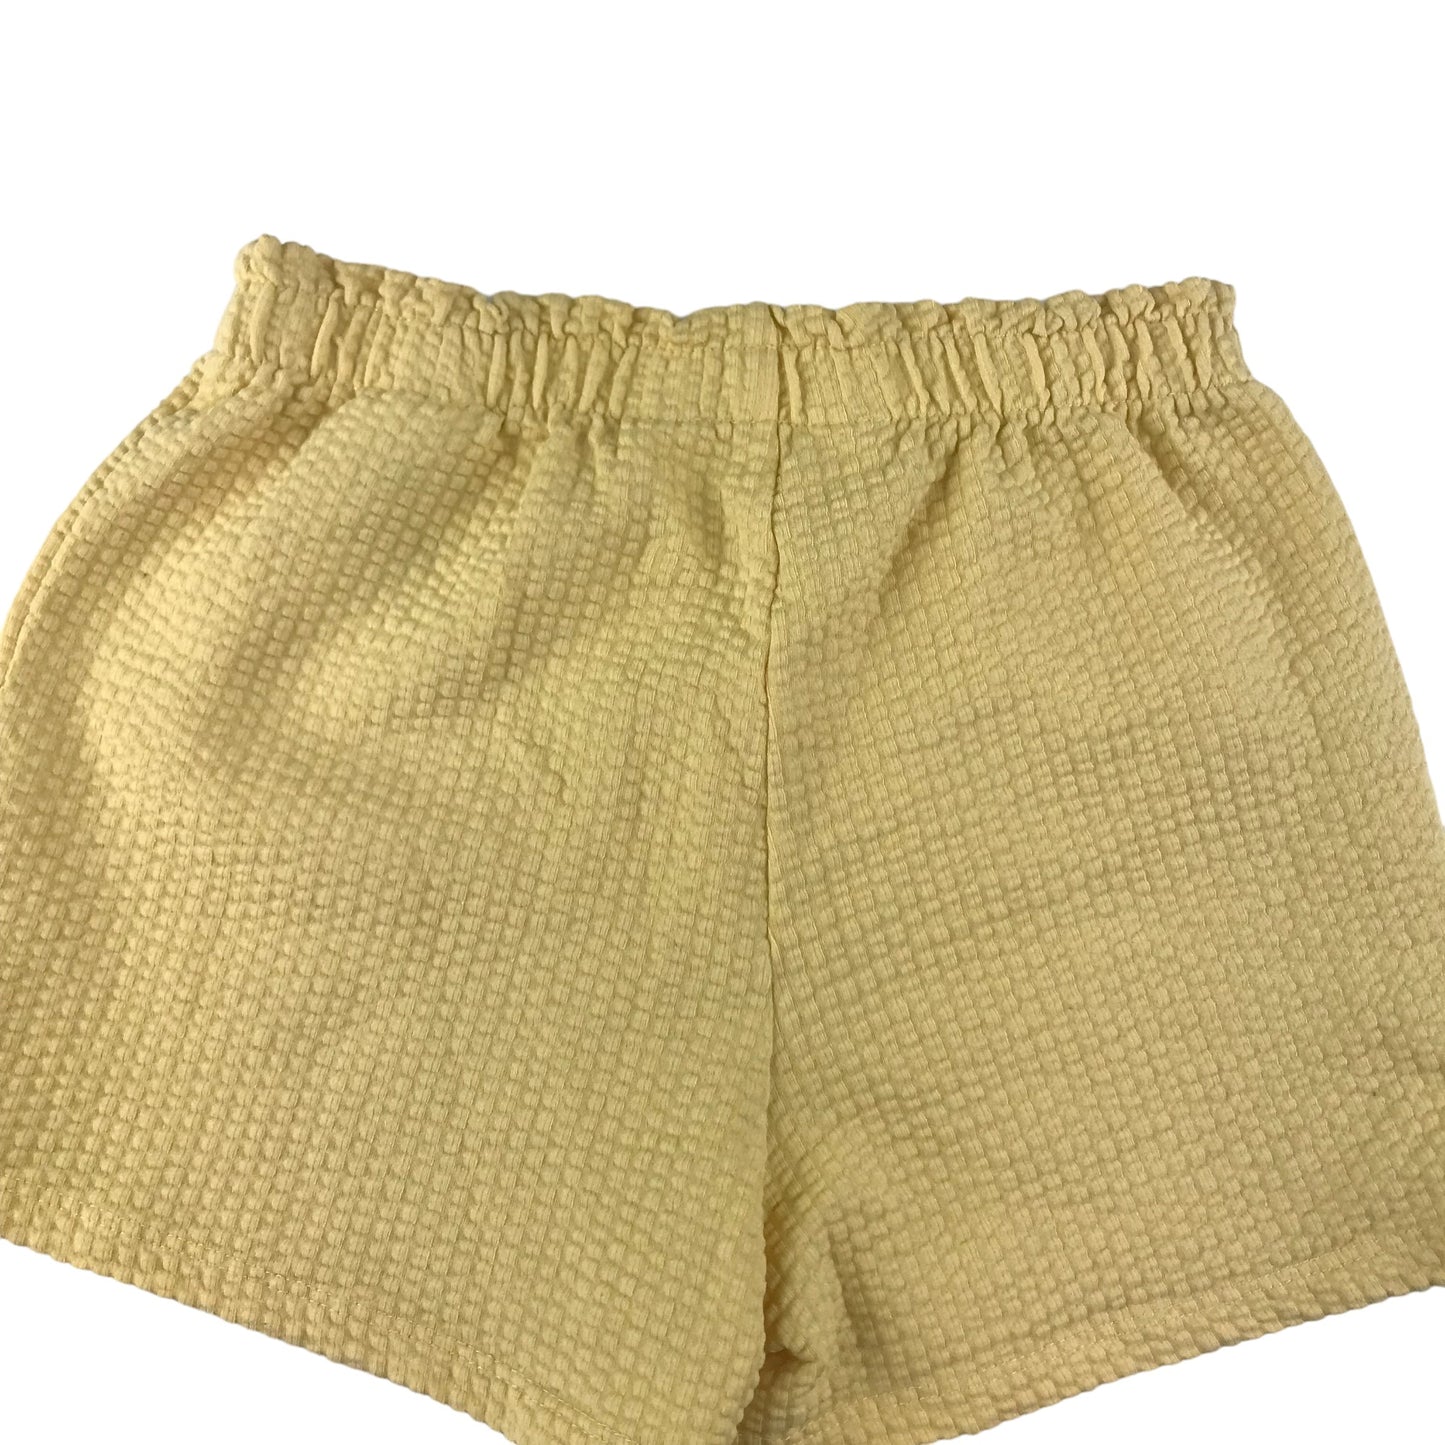 H&M Shorts Age 5 Yellow Waffle Style Elasticated Waist